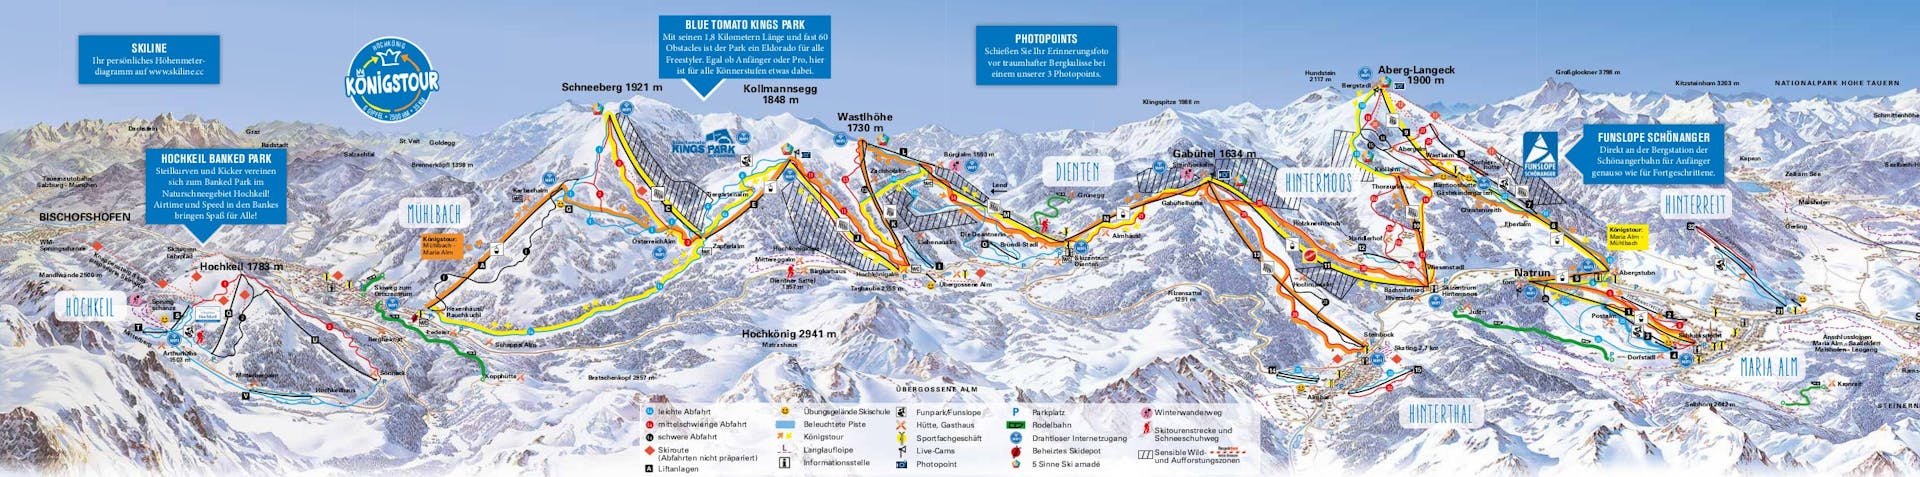 Dienten ski map